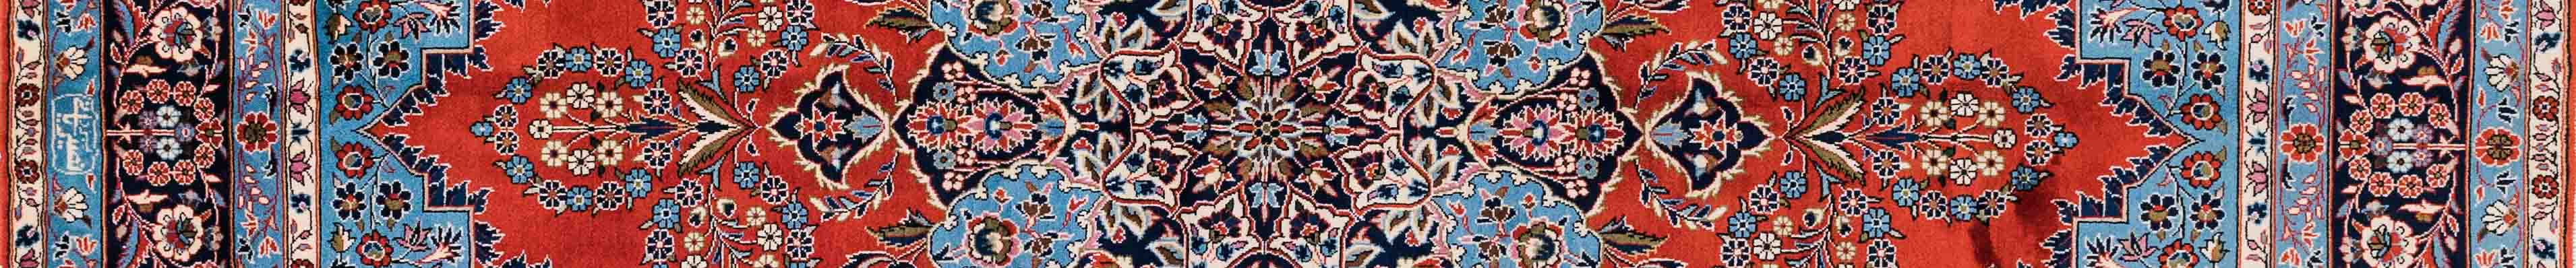 Yazd Persian Carpet Rug N1Carpet Canada Montreal Tapis Persan 2250